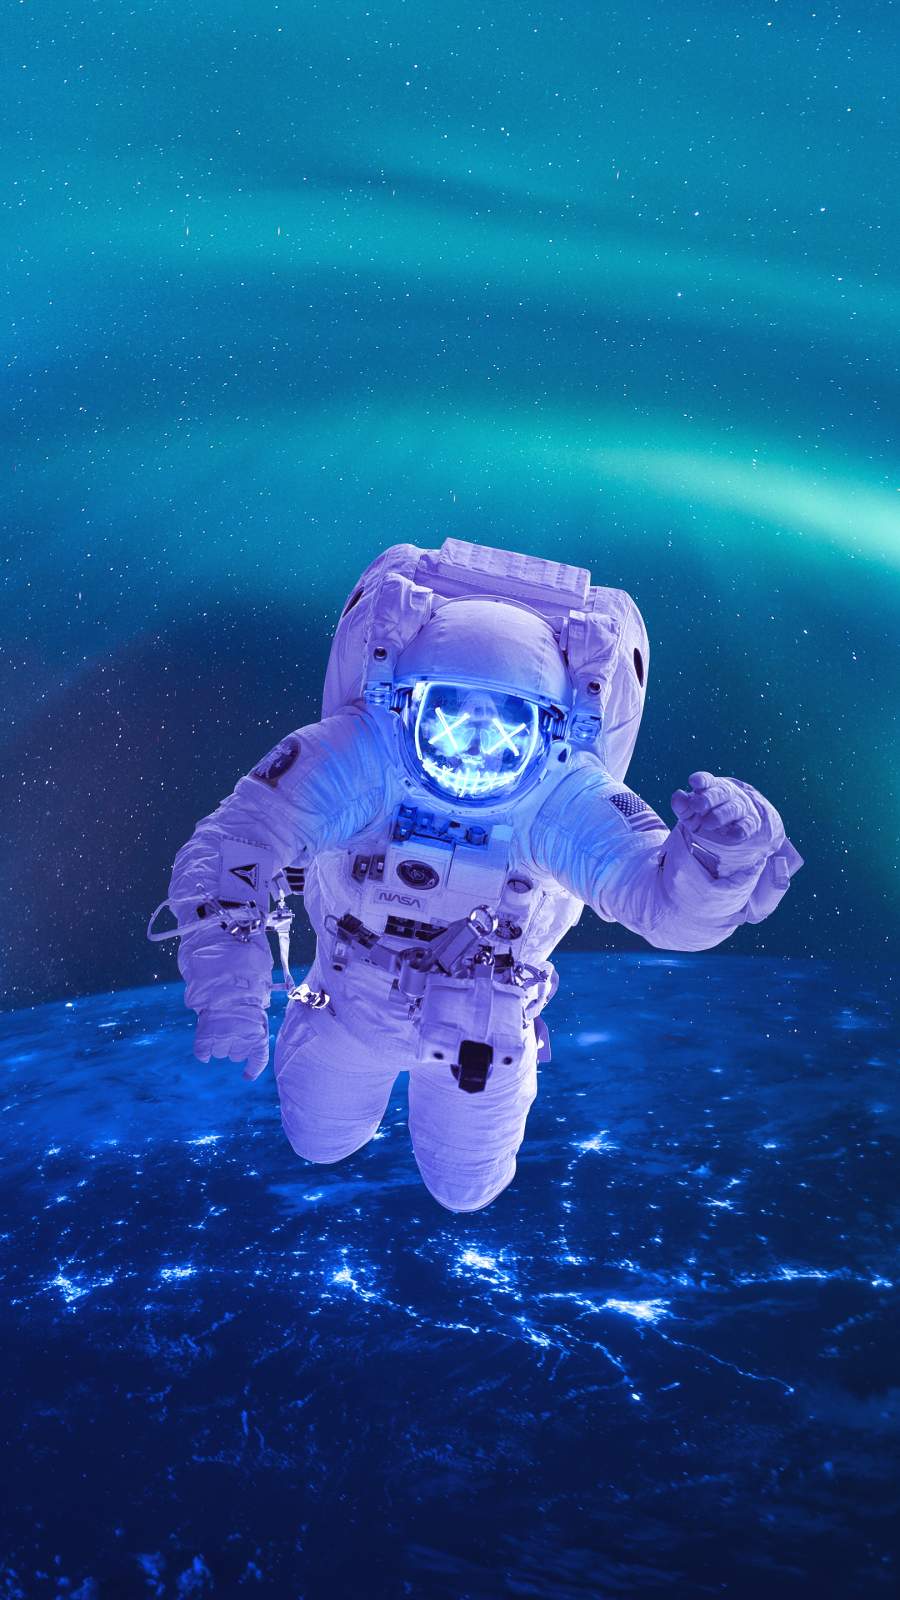 Neon Astronaut IPhone Wallpaper Wallpaper, iPhone Wallpaper